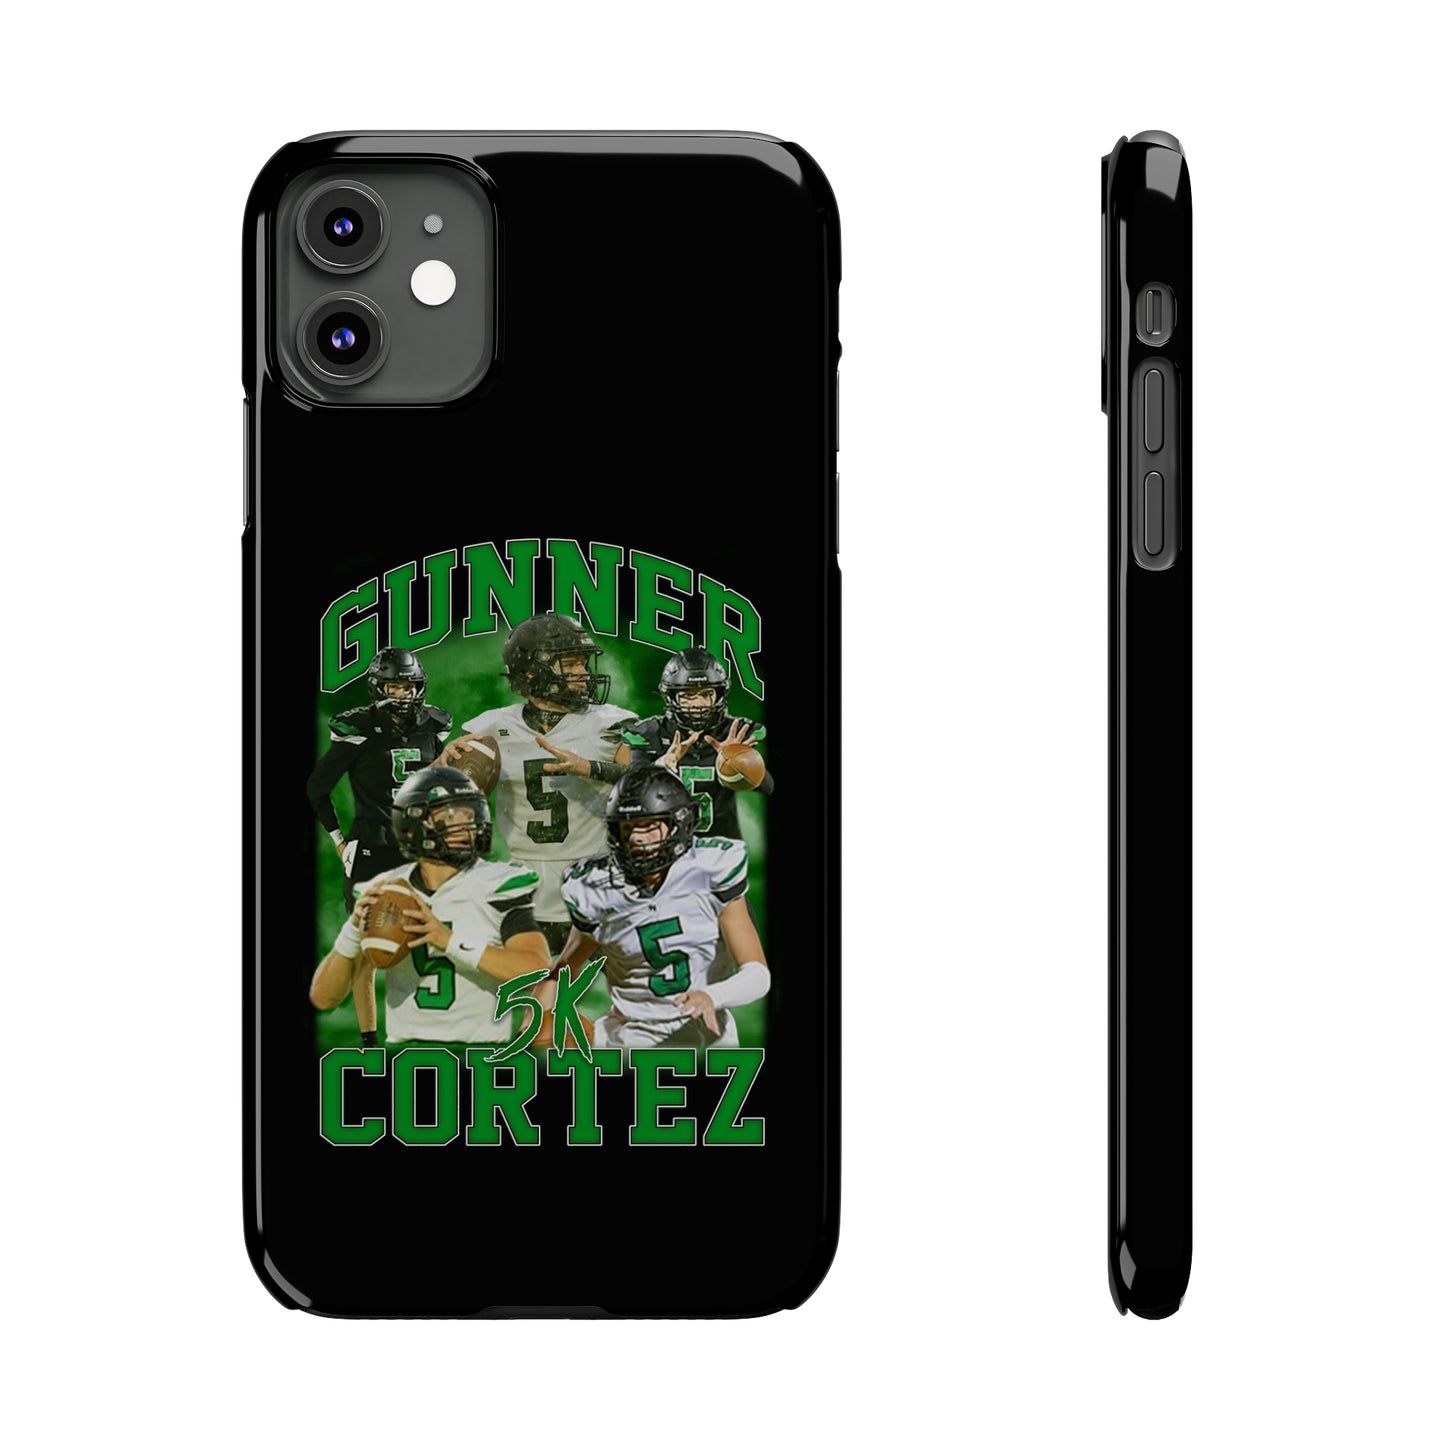 Gunner Cortez Phone Case